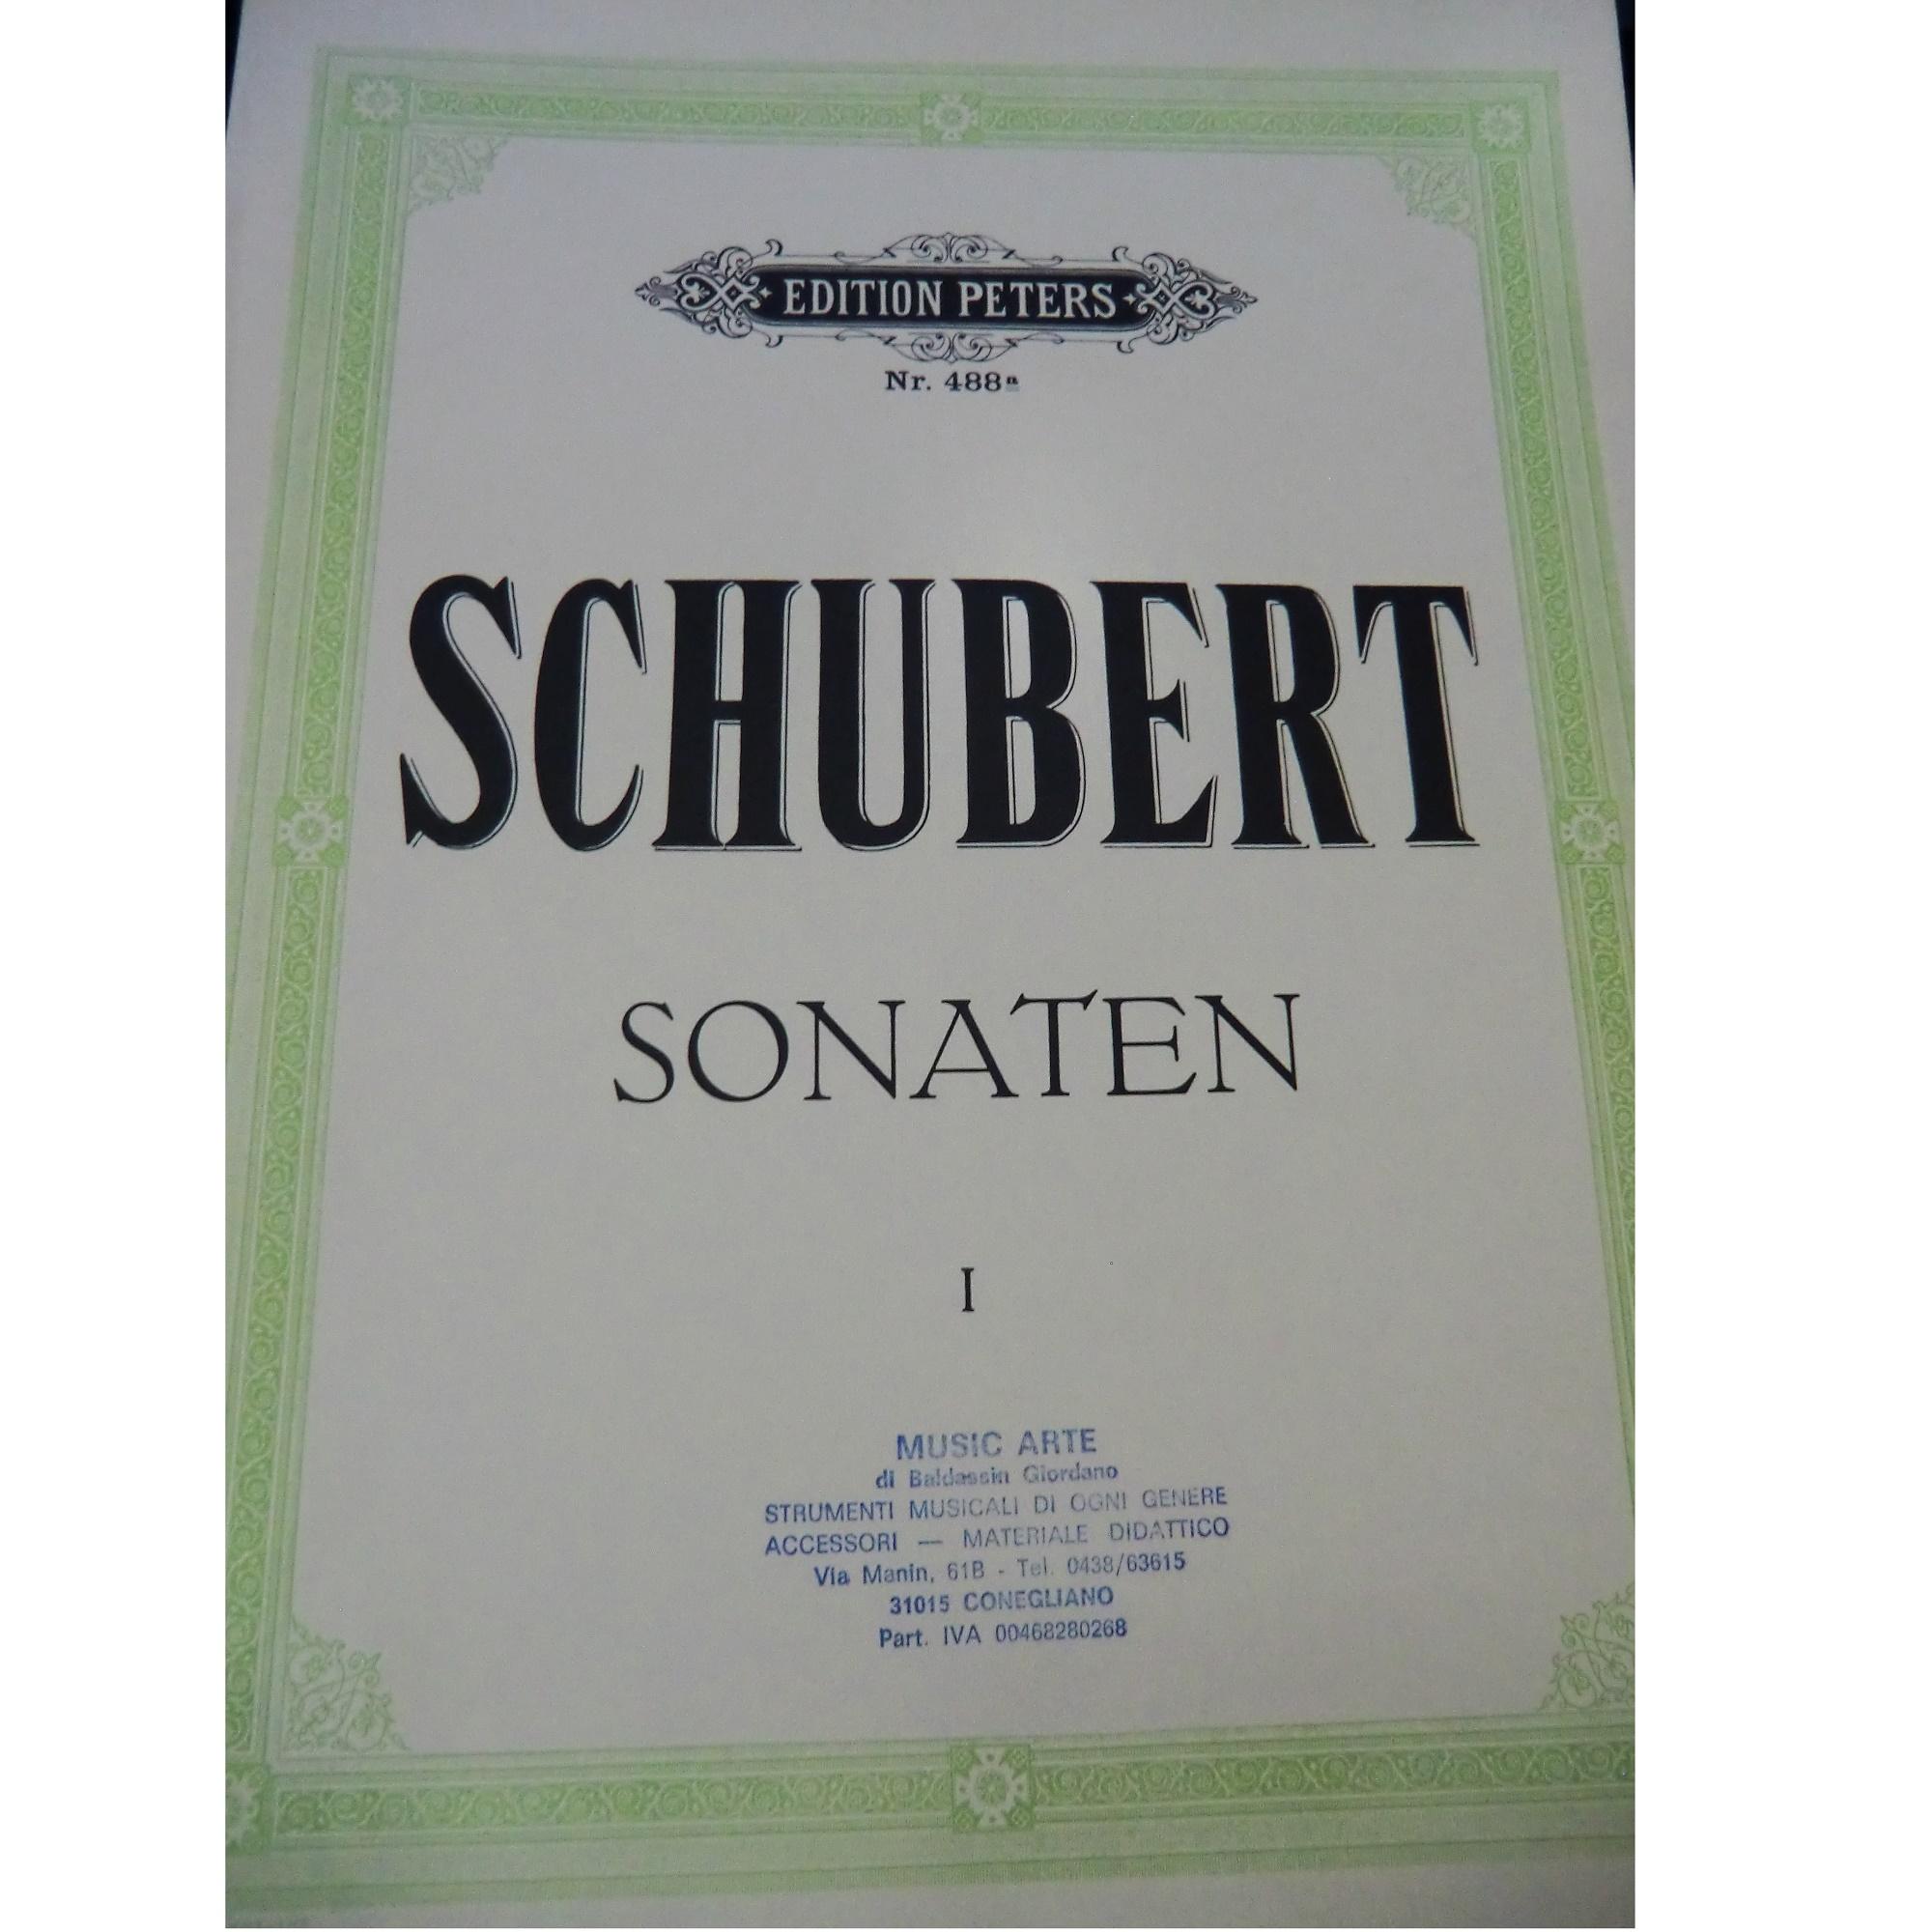 Schubert Sonaten I - Edition Peters